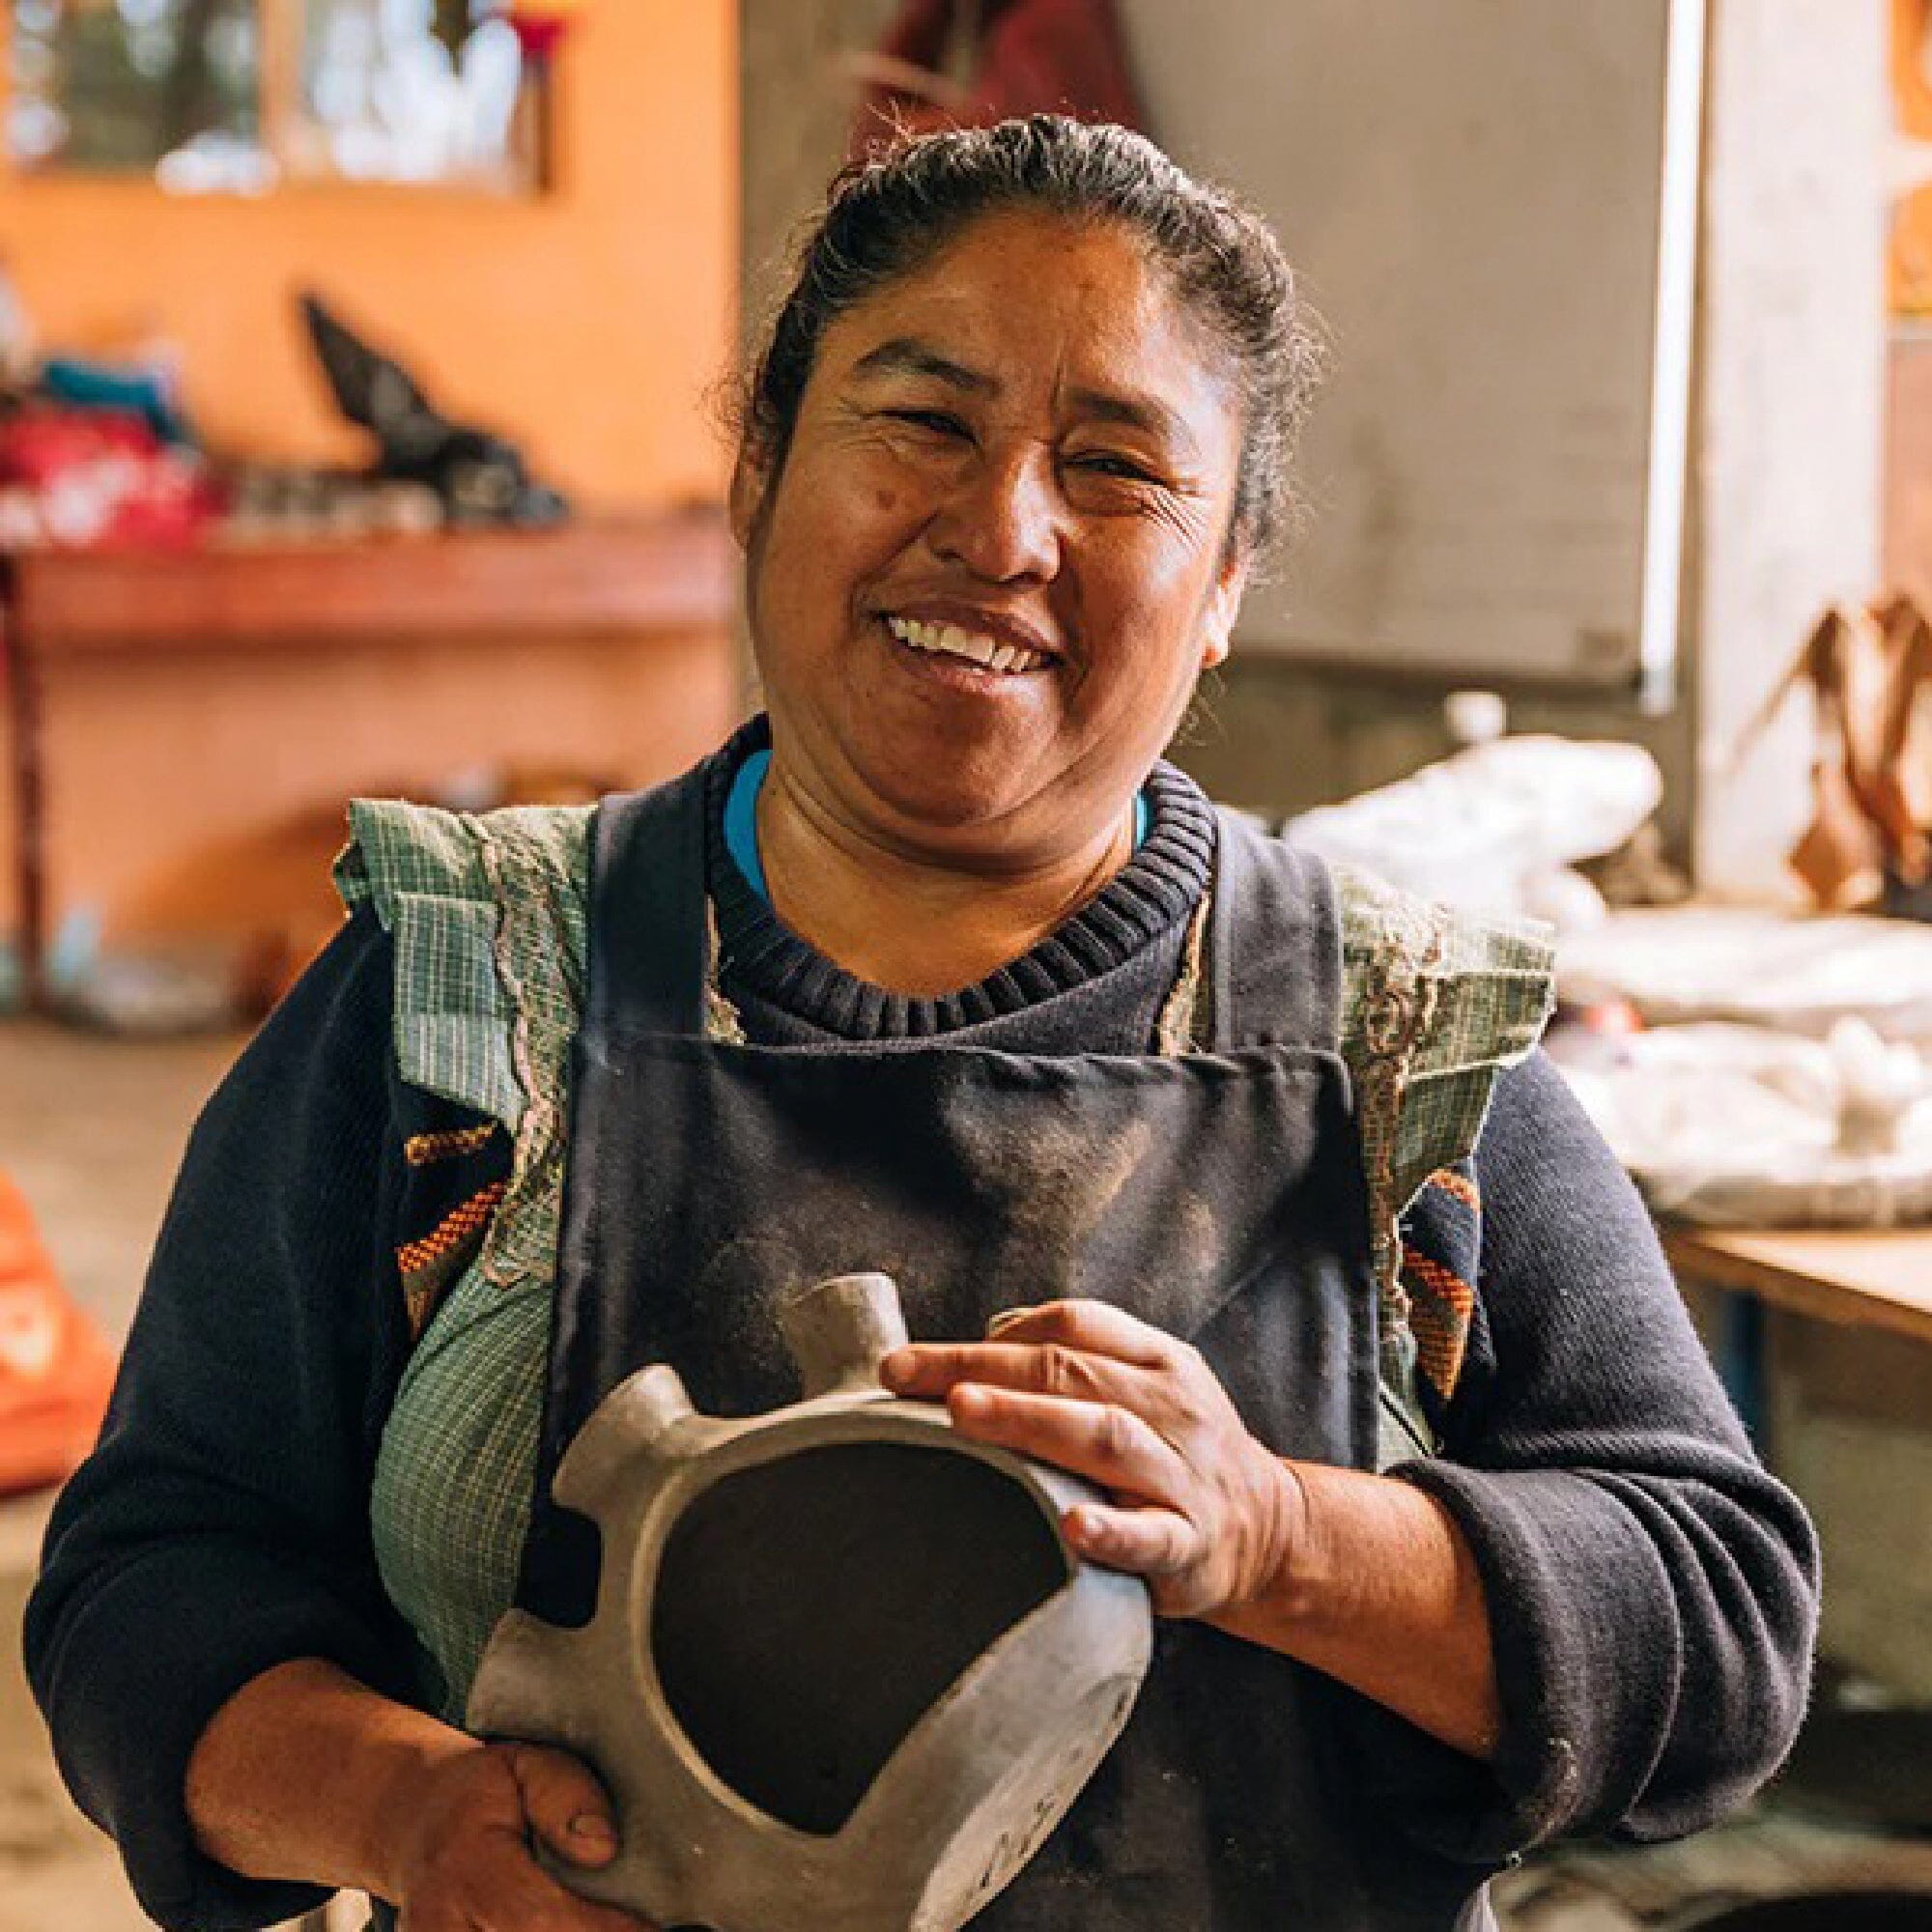 Oaxacan Clay Vase | Florero Home Decor 